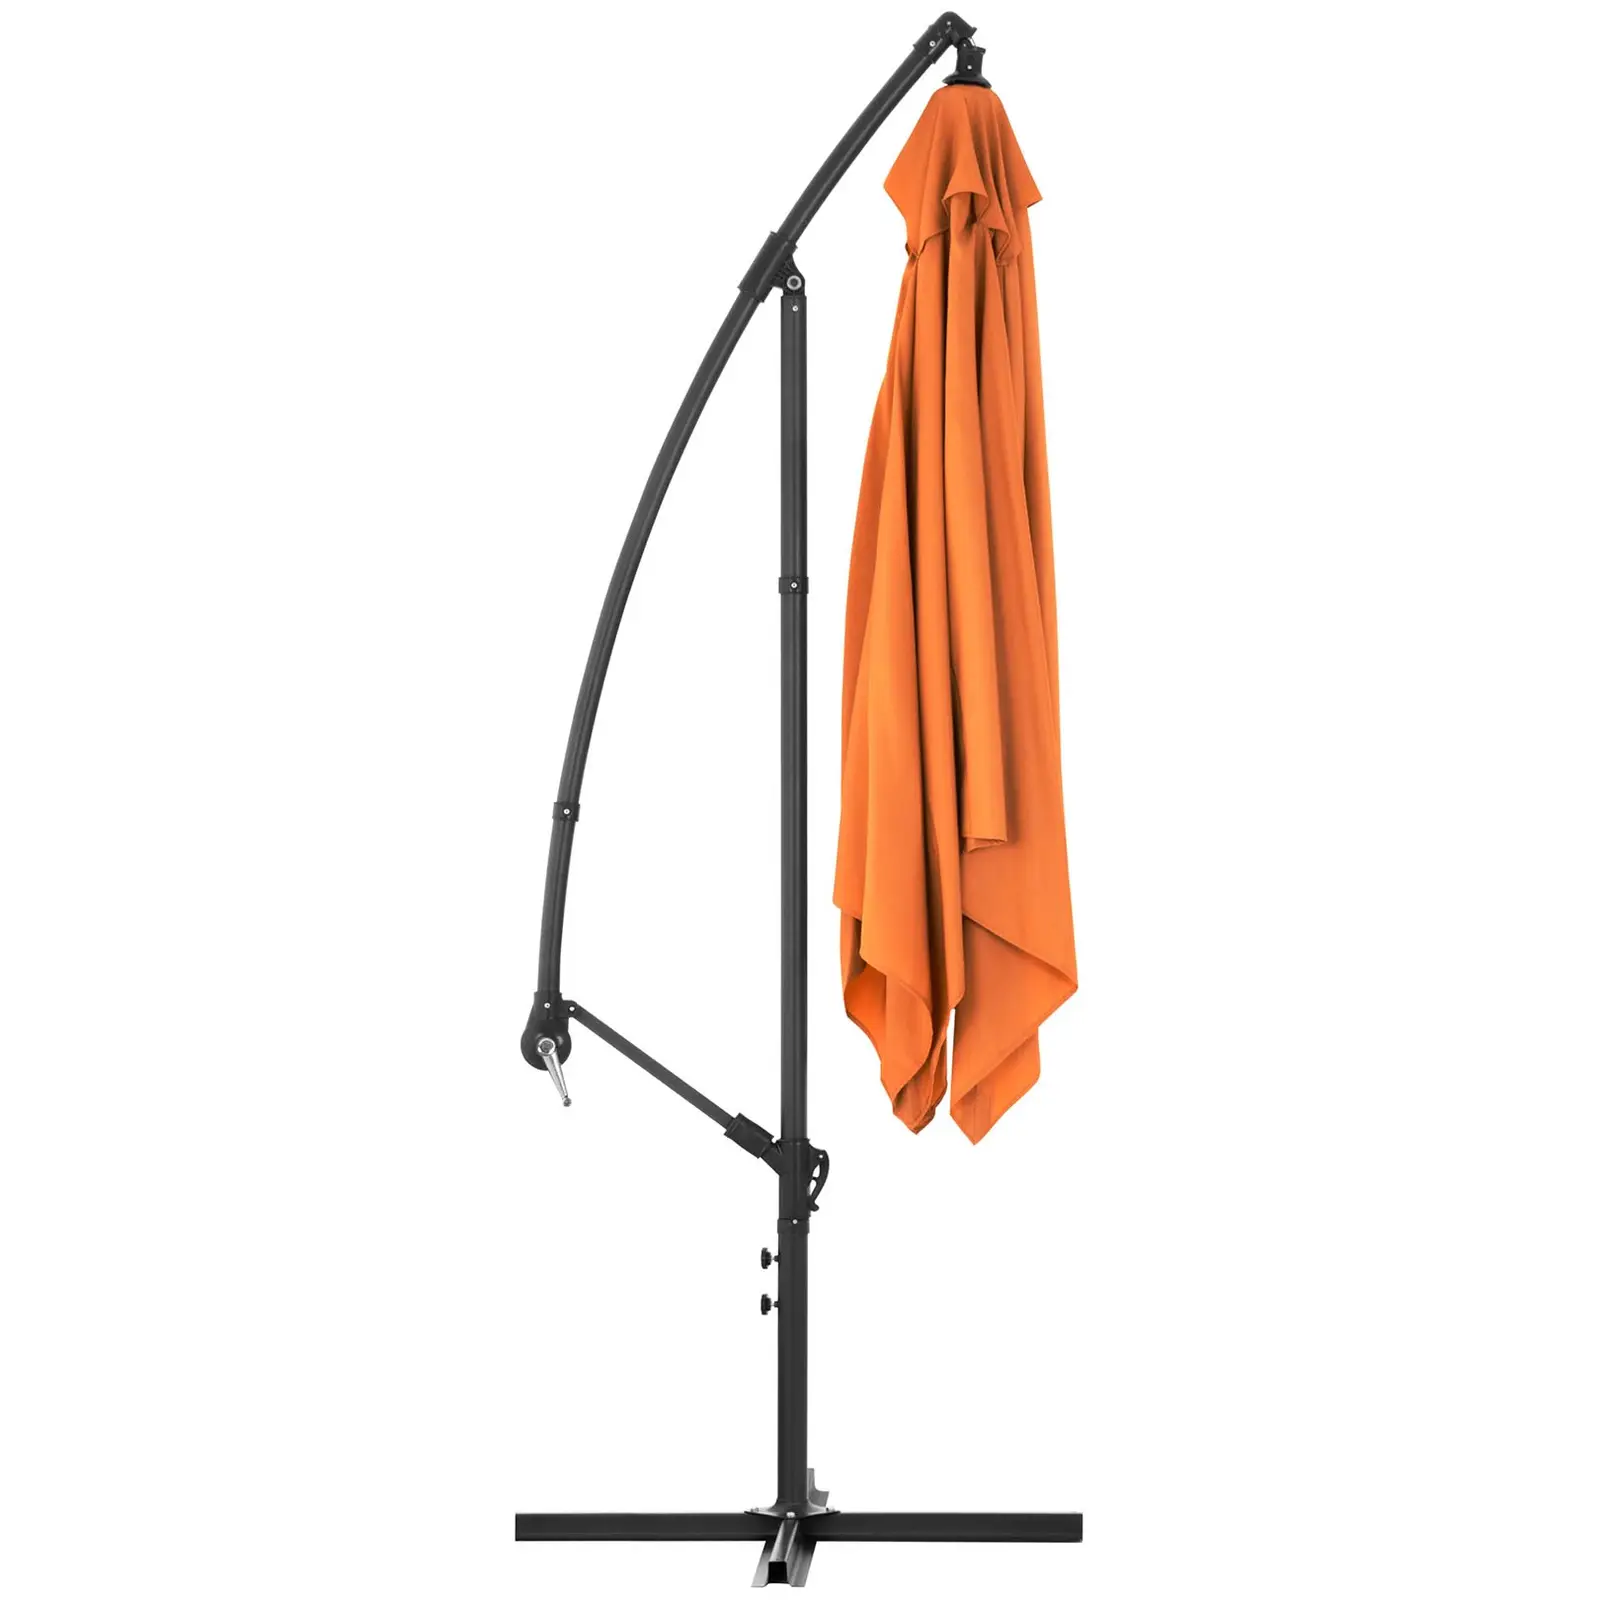 Parasol déporté - Orange - Rectangulaire - 250 x 250 cm - Inclinable